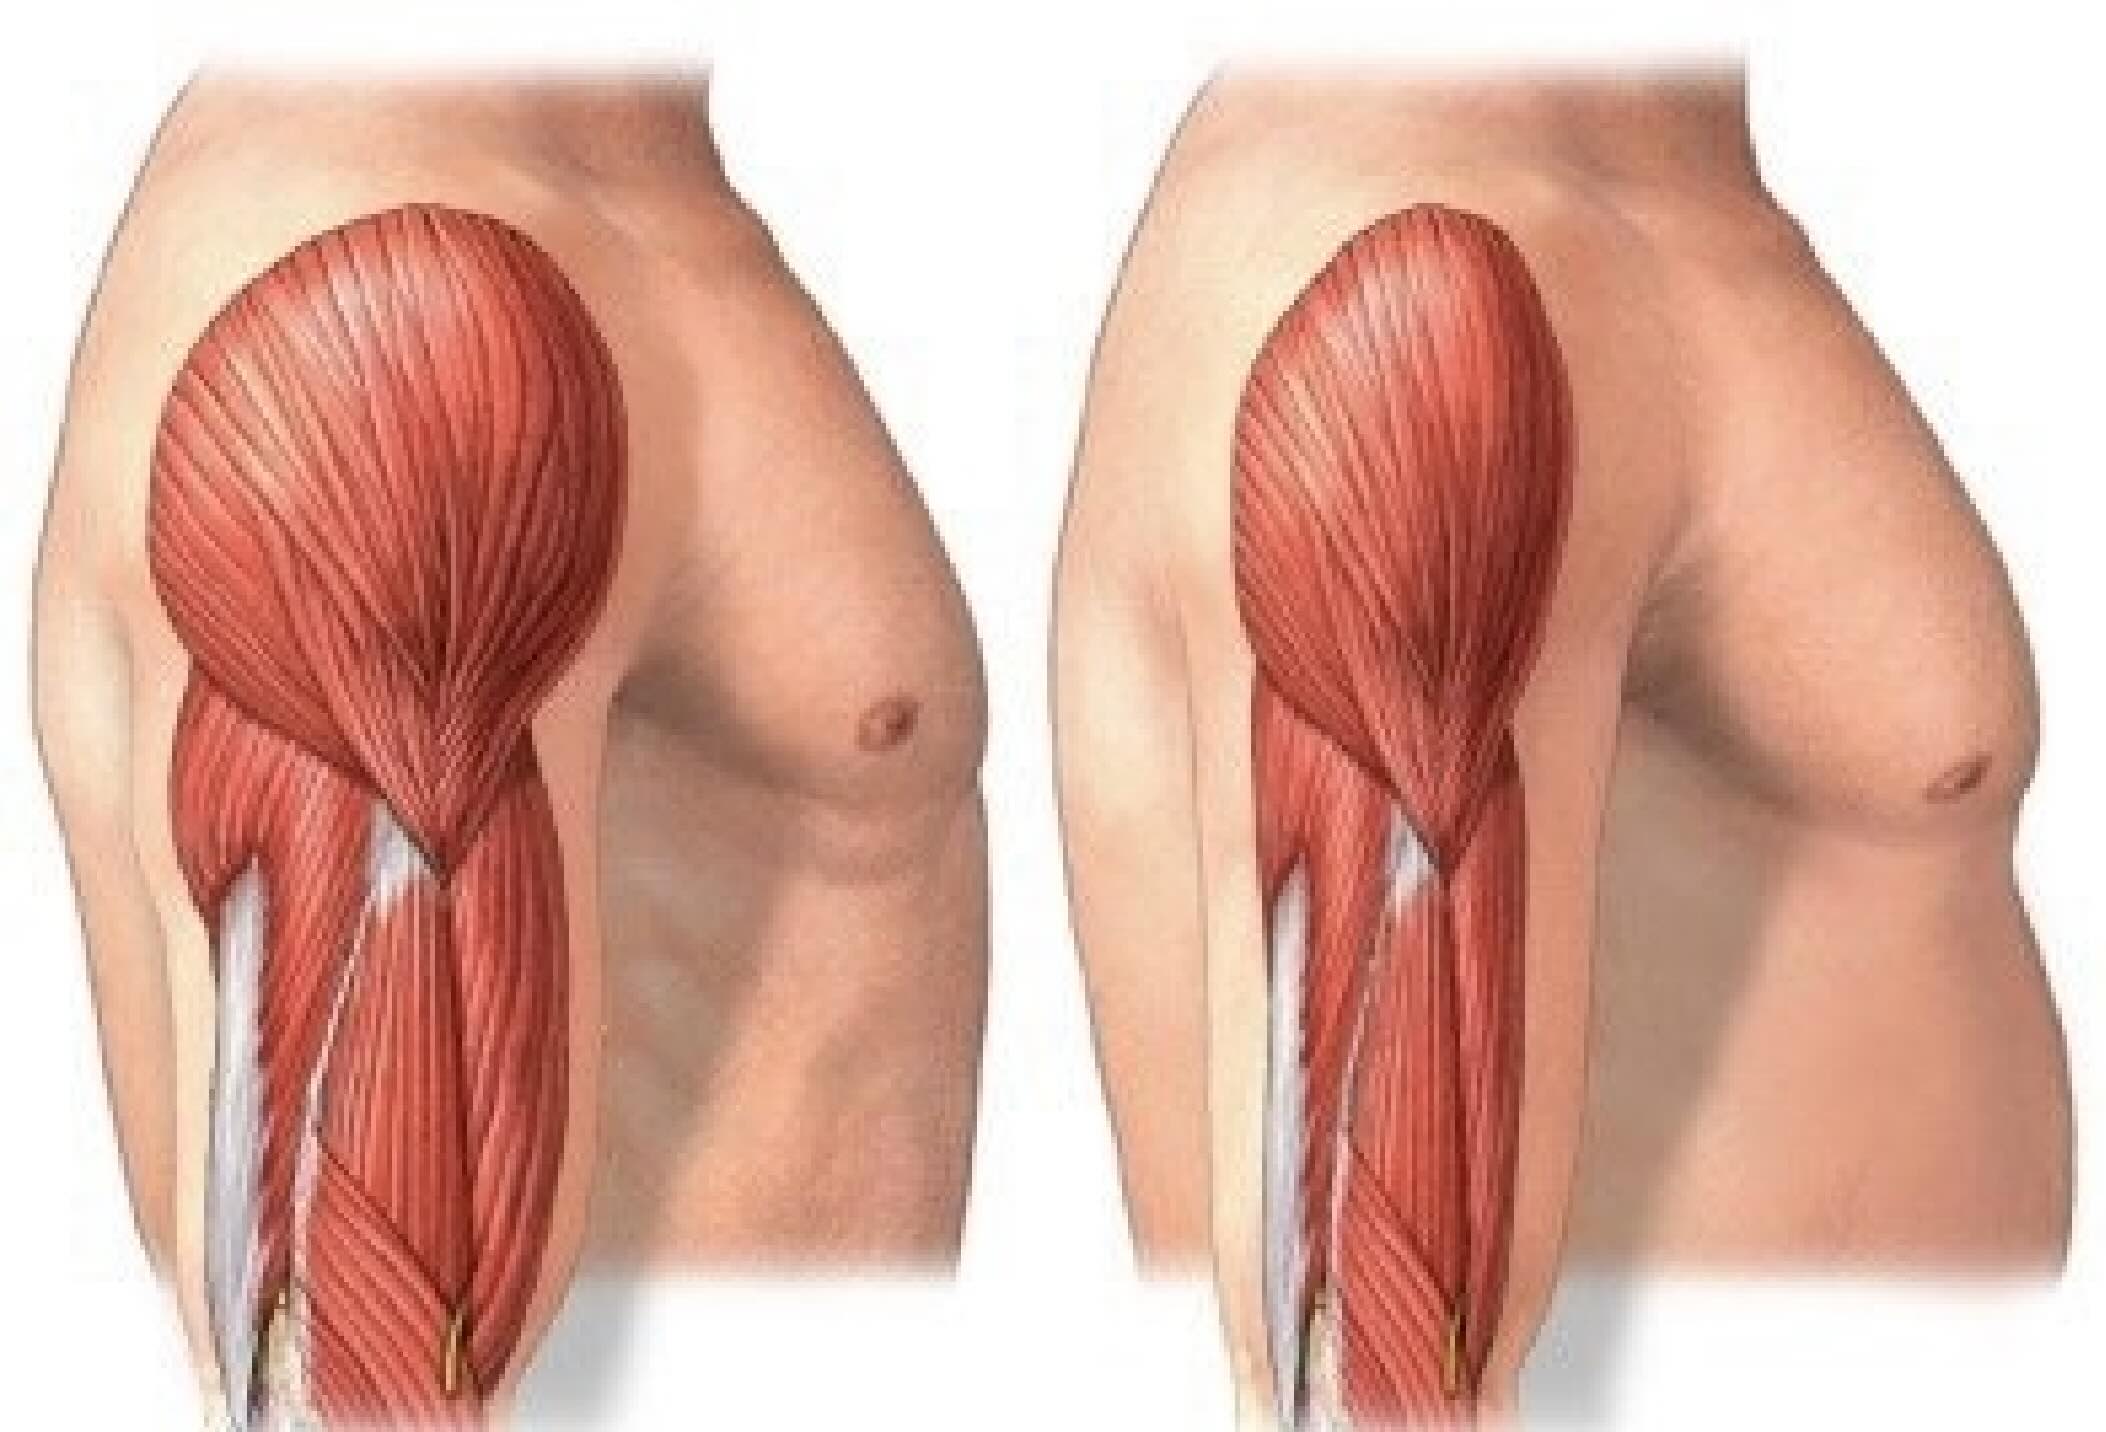 Hipertrofia muscular